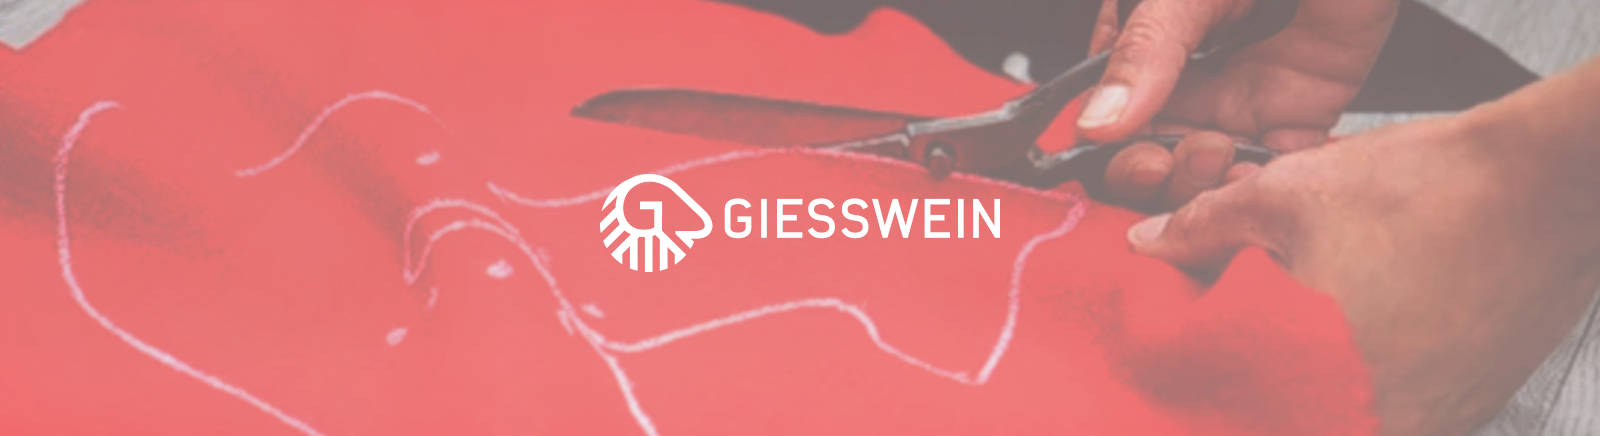 Giesswein Herrenschuhe online entdecken im Juppen Schuhe Shop